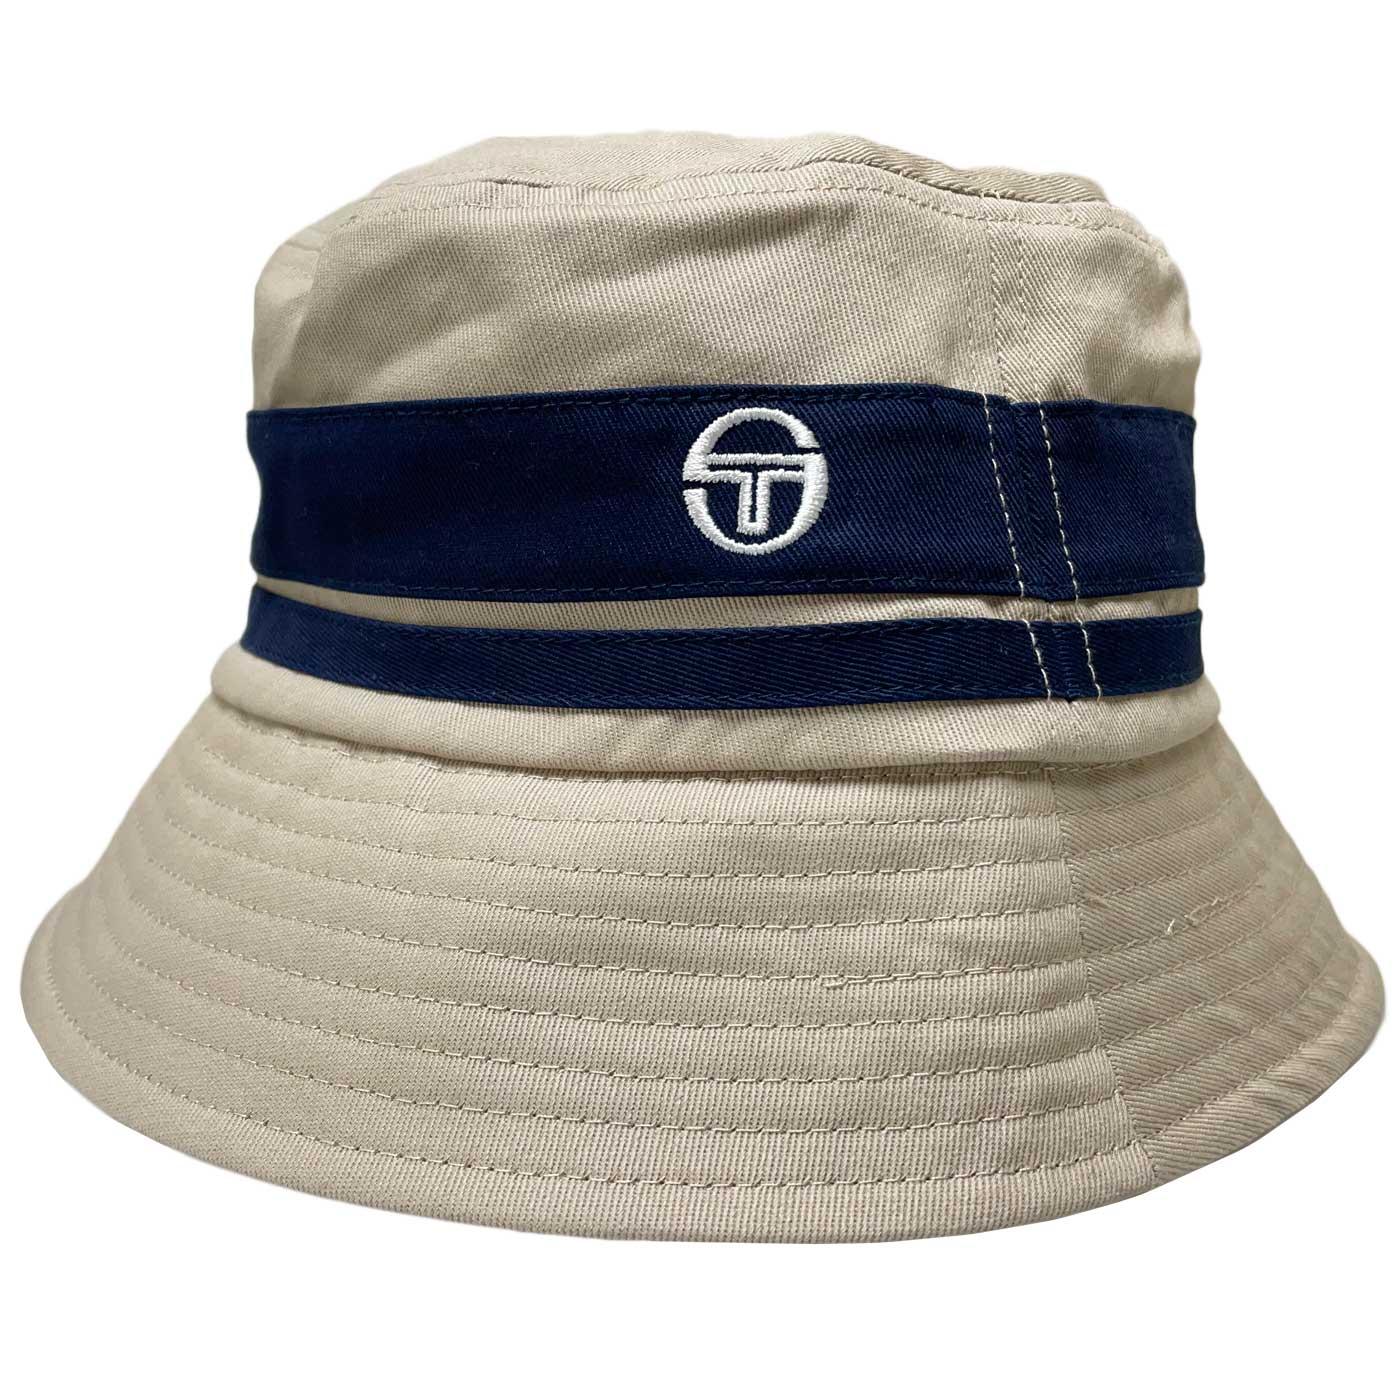 Newsford SERGIO TACCHINI Retro 90s Bucket Hat (H)